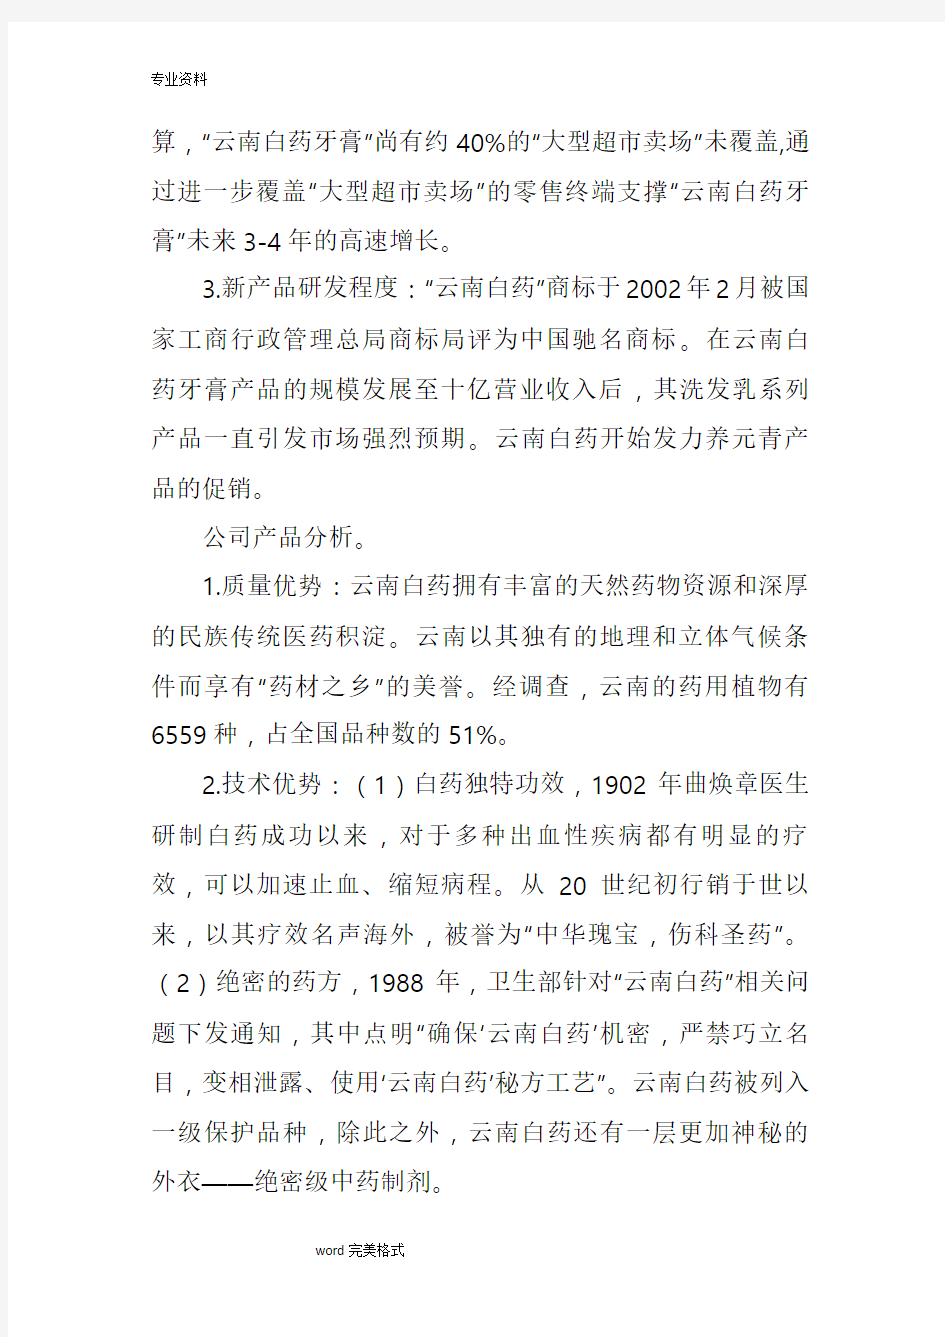 云南白药集团股份有限公司内部控制分析报告